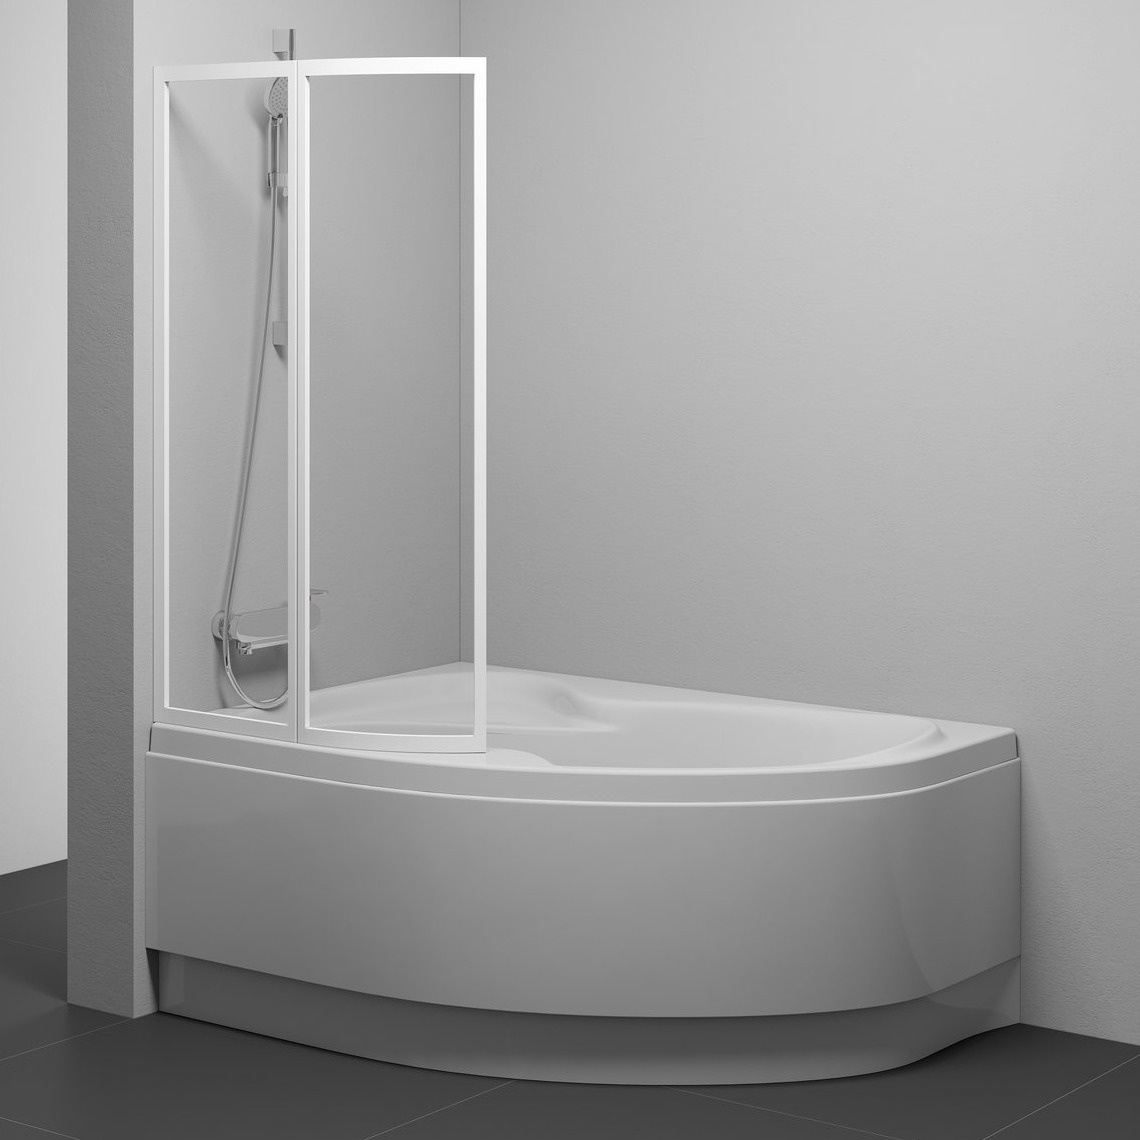 Шторка стеклянная для ванны двухсекционная распашная 150x89см RAVAK ROSA VSK2 L стекло прозрачное 3мм профиль белый 76L70100Z1